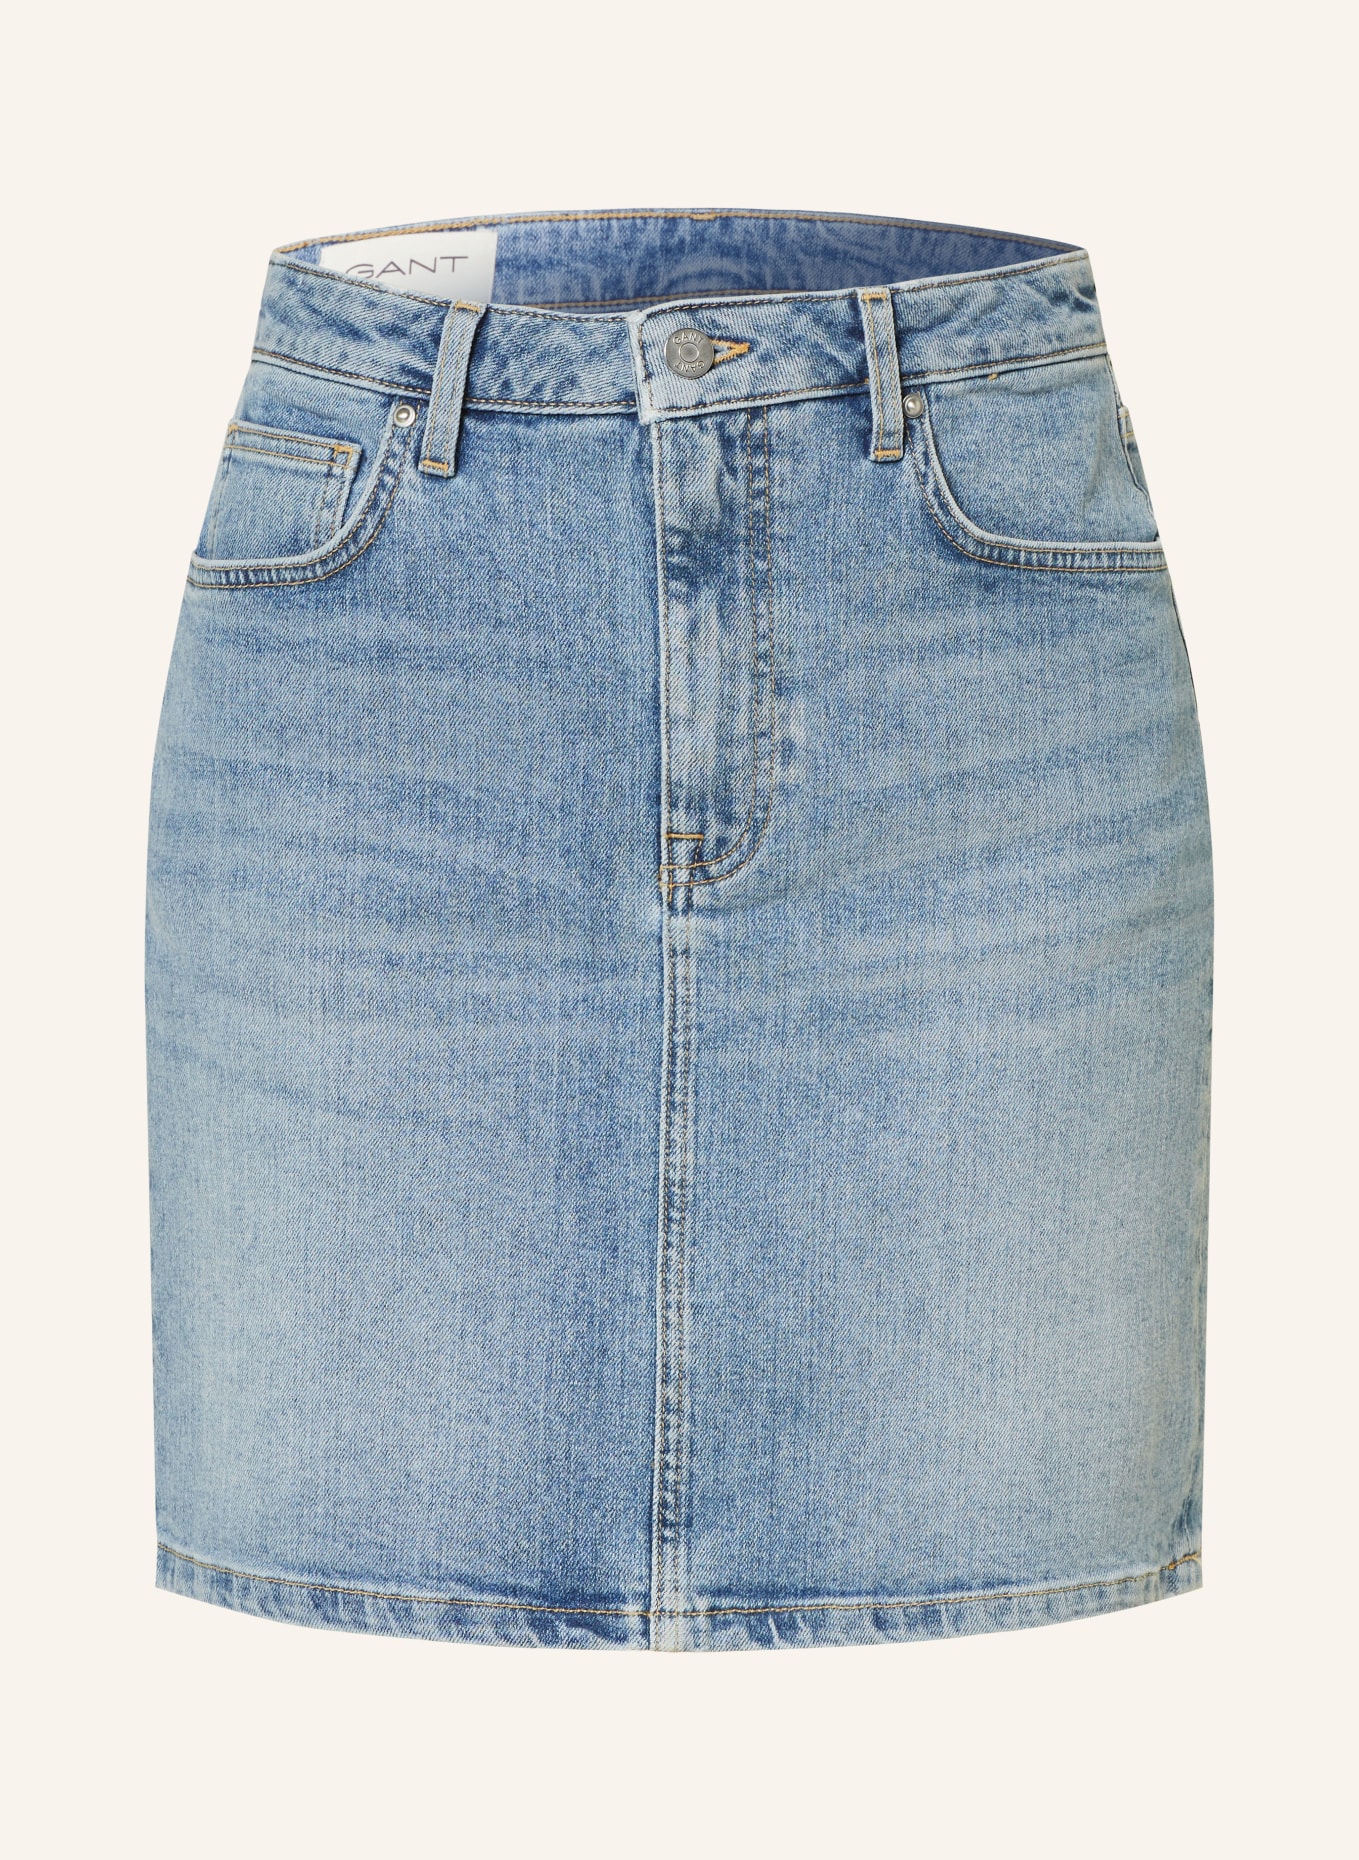 GANT Denim skirt, Color: 981 SEMI LIGHT BLUE WORN (Image 1)